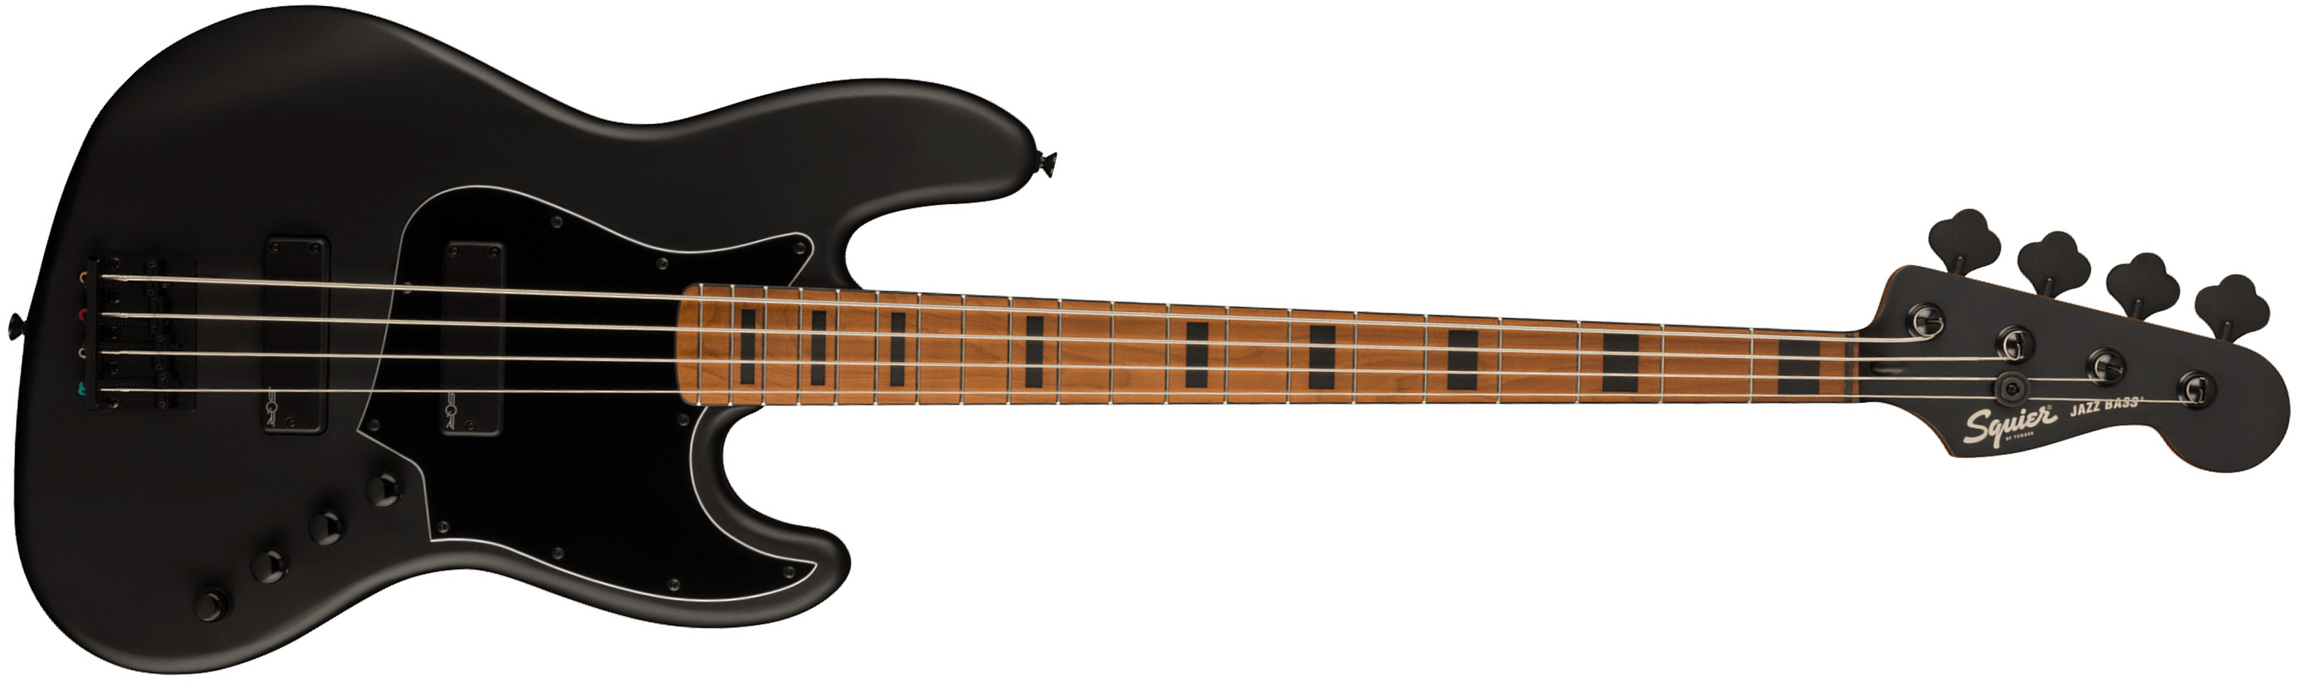 Squier Jazz Bass Contemporary Active Hh Black Pickguard Fsr Mn - Flat Black - Bajo eléctrico de cuerpo sólido - Main picture